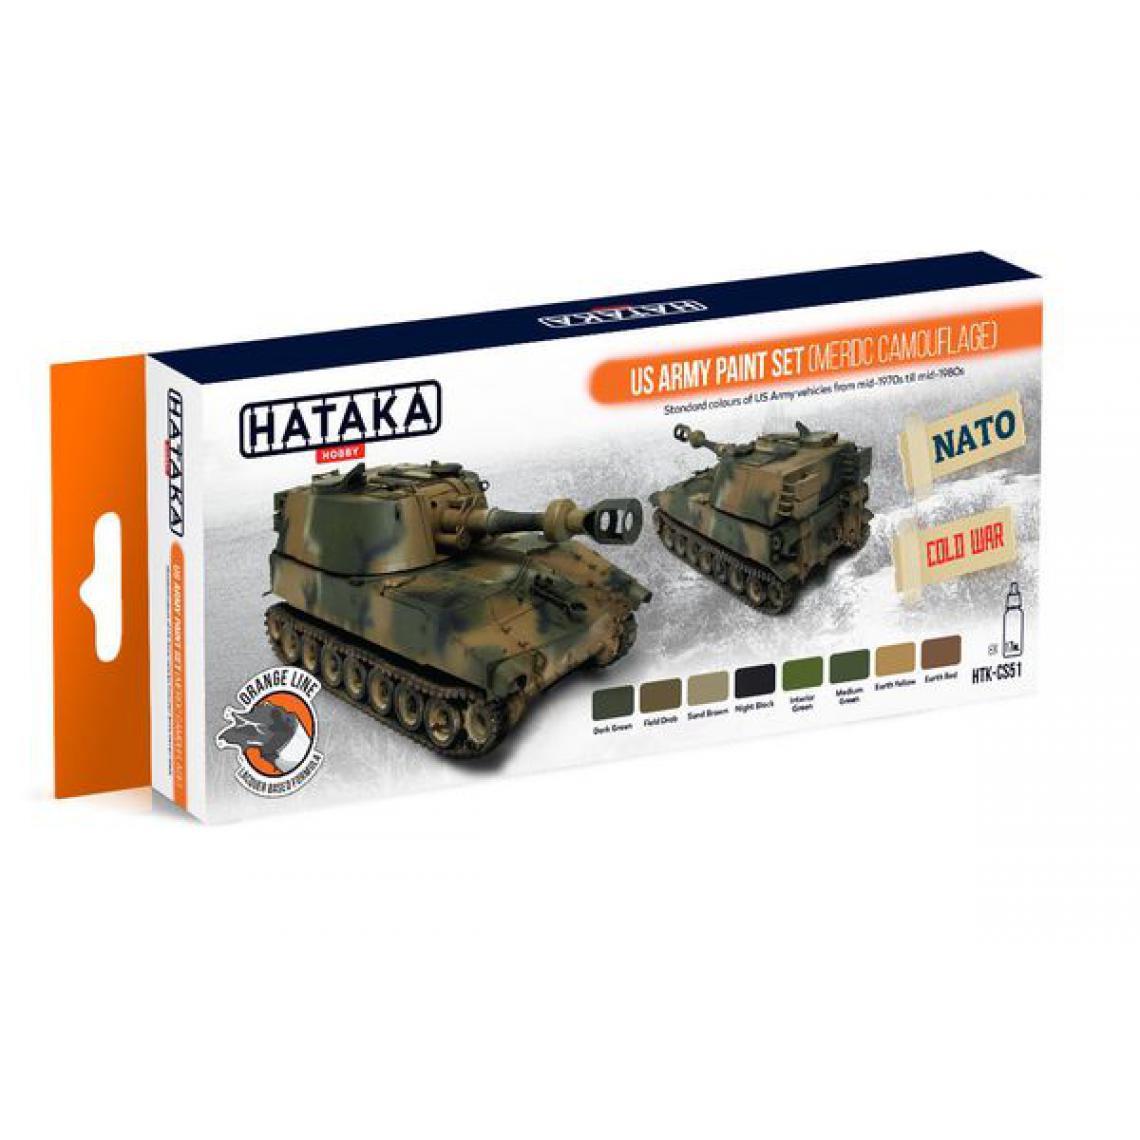 Hataka - Orange Line Set(8 pcs) US Army paint set (MERDC camouflage) - HATAKA - Accessoires et pièces